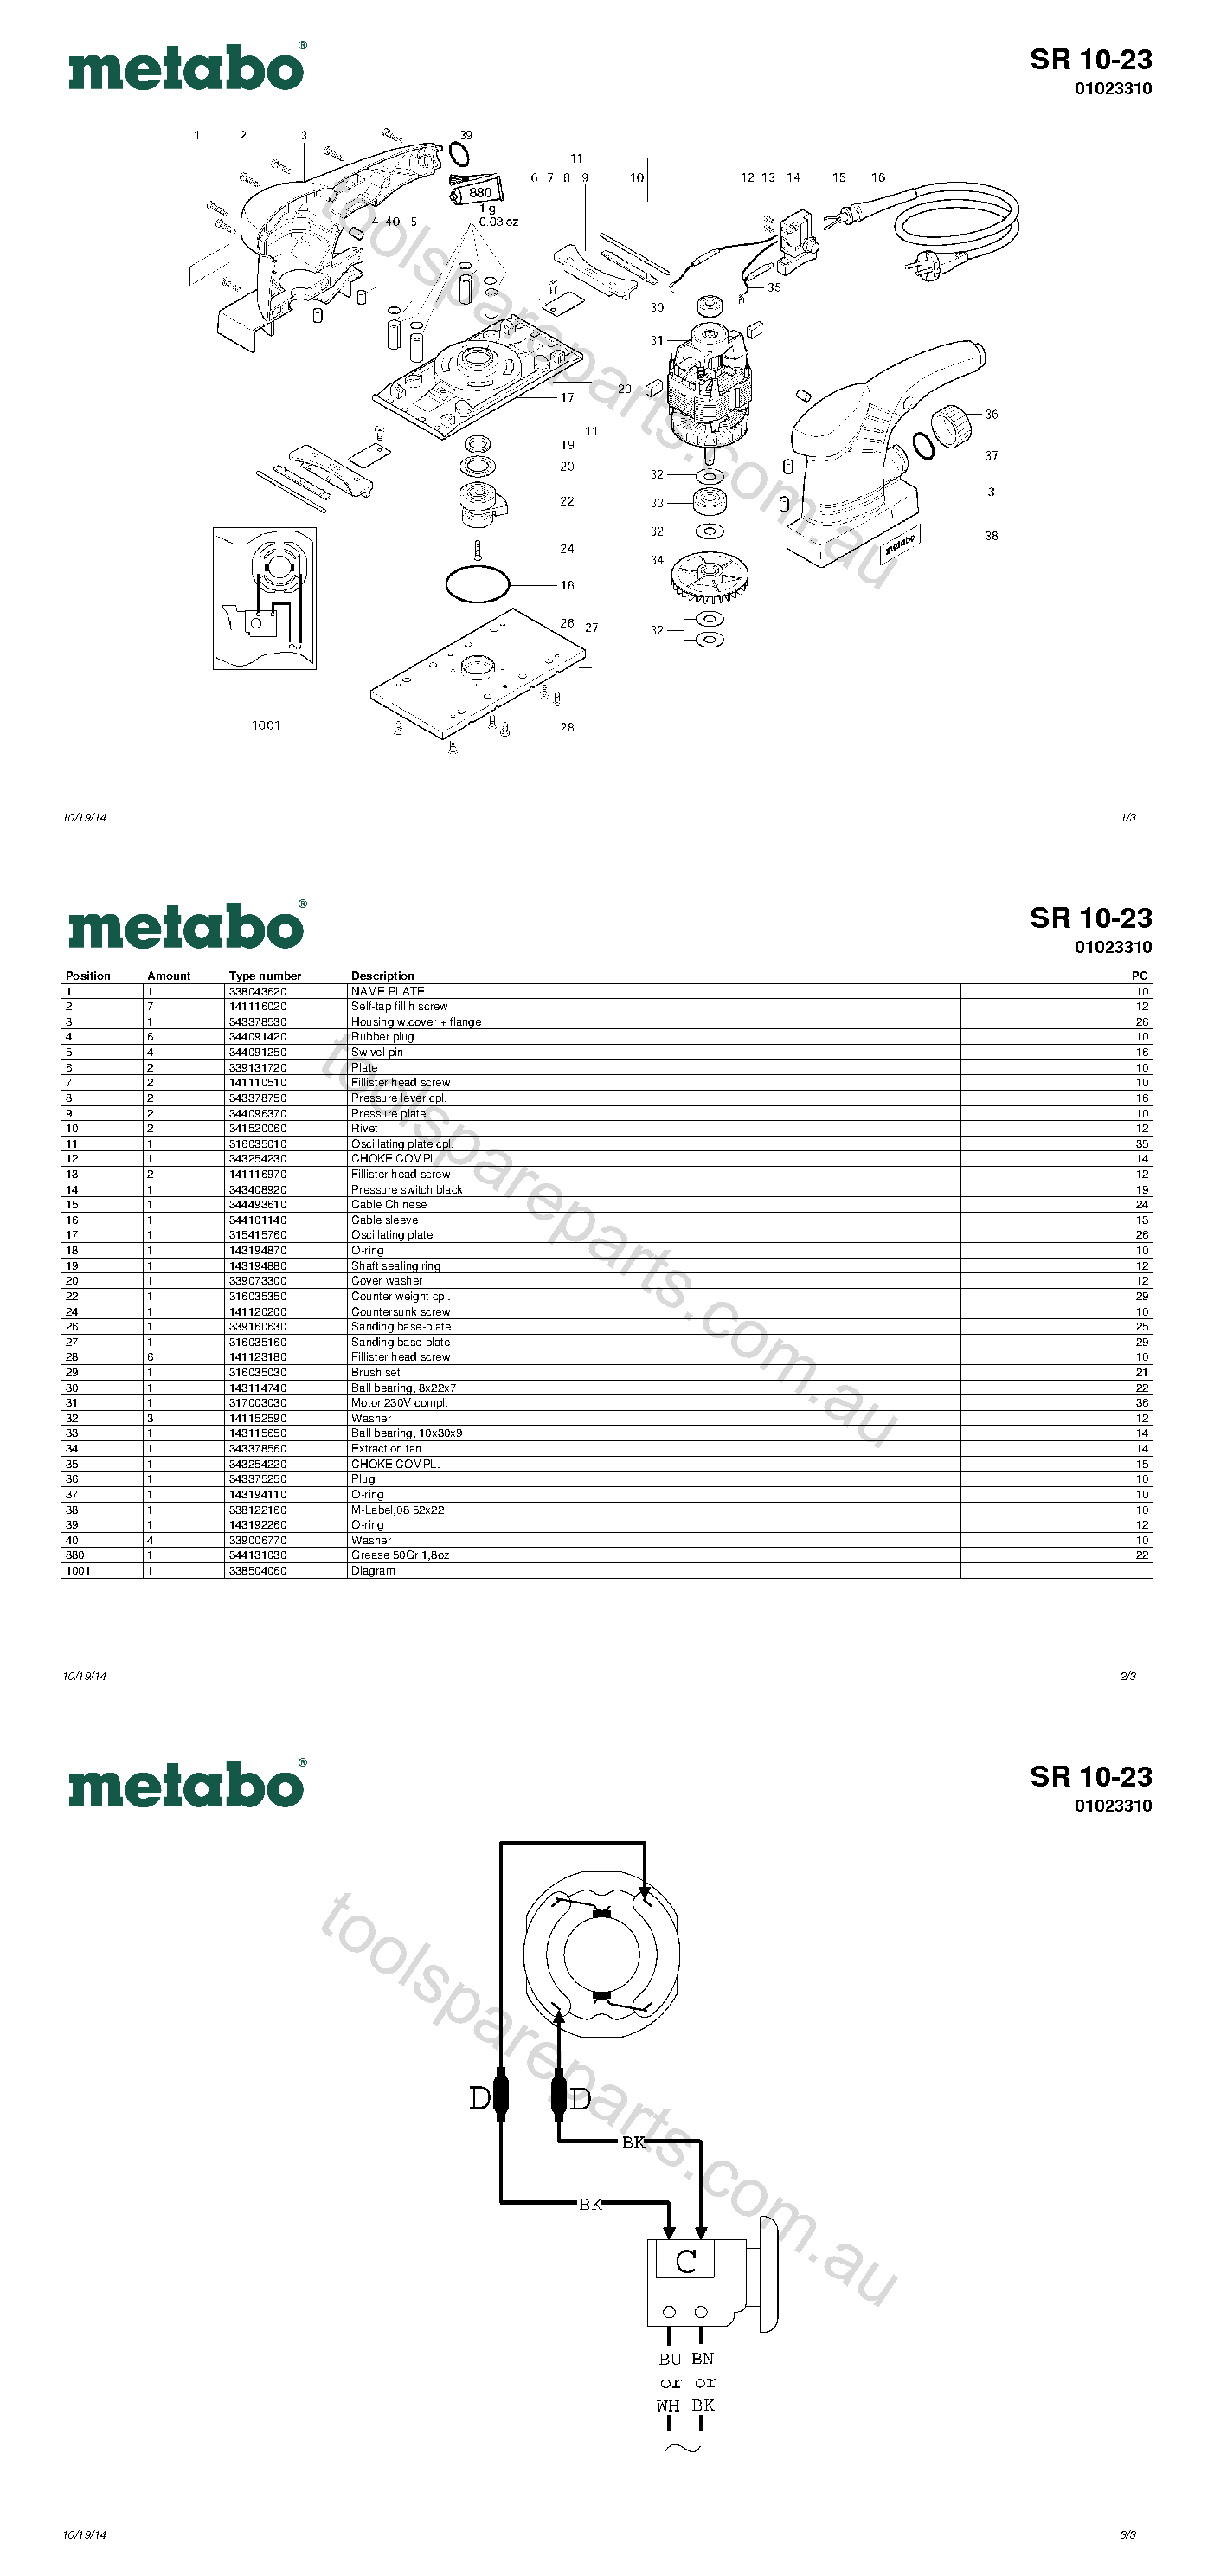 Metabo SR 10-23 01023310  Diagram 1